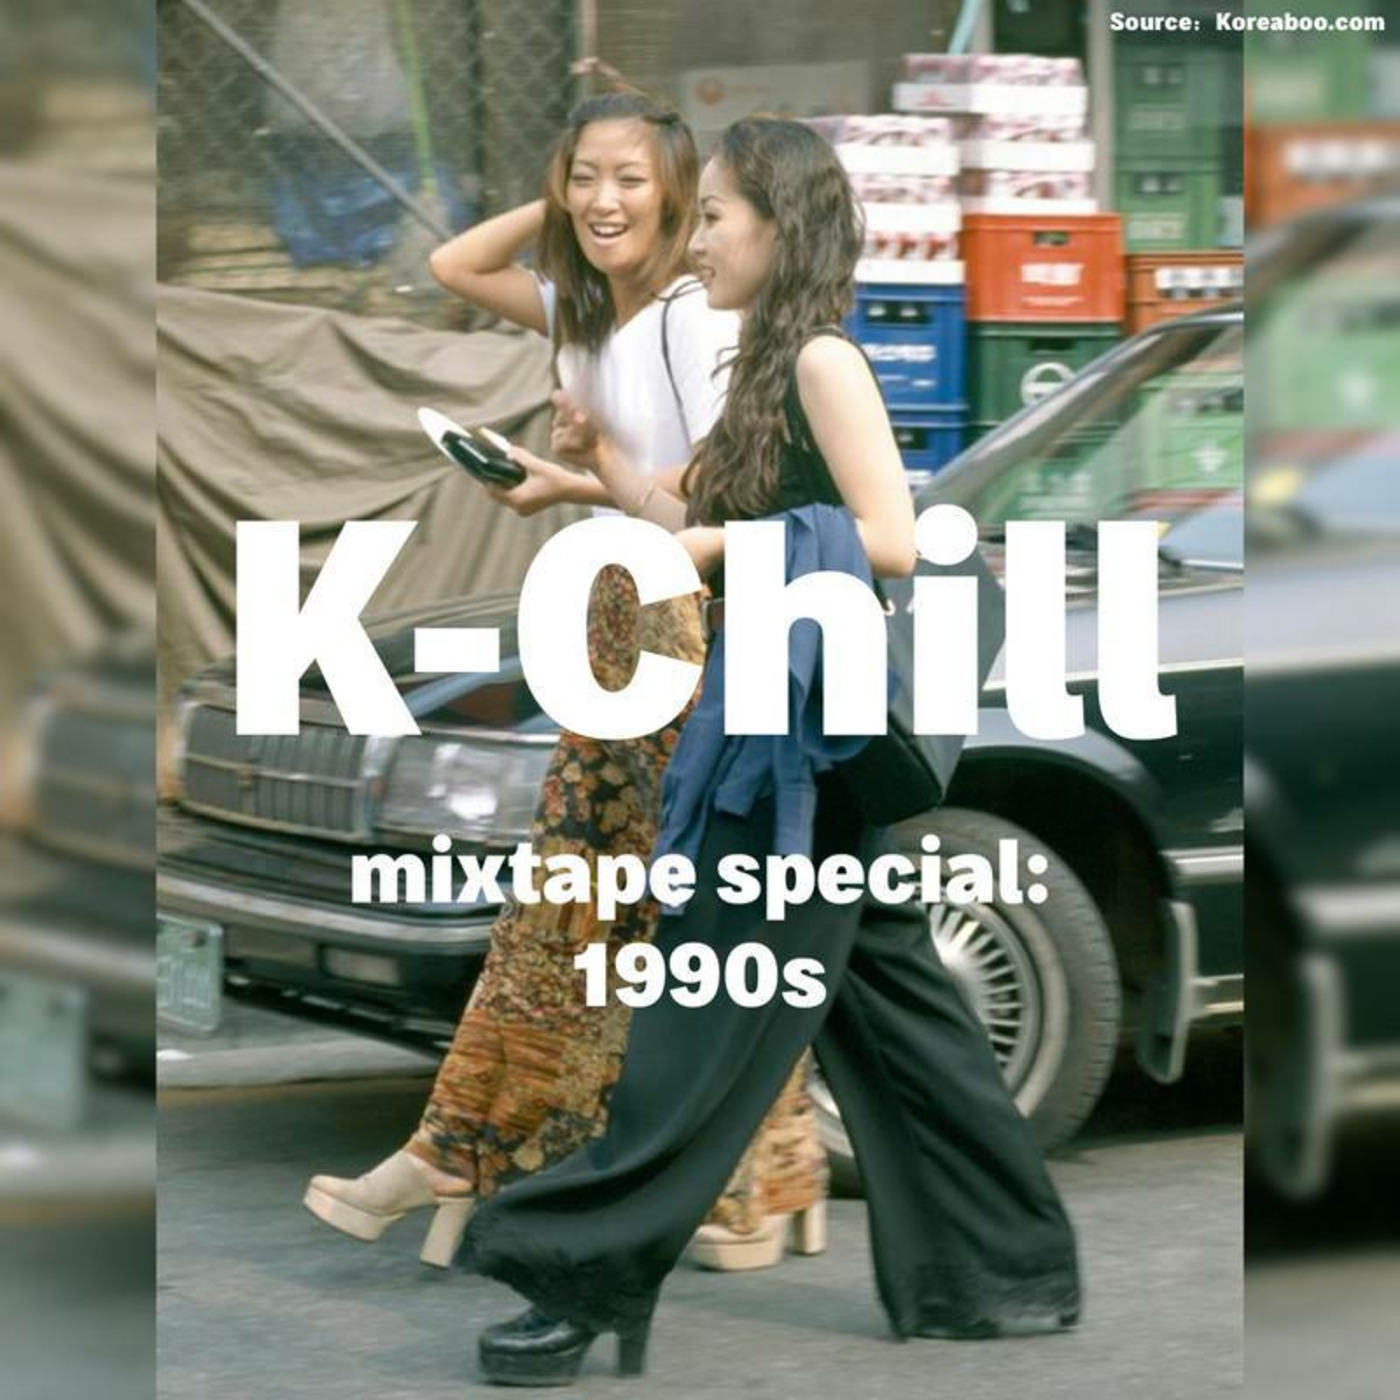 K-Chill mixtape special: 1990s (K-Pop/R&B/Hip Hop)